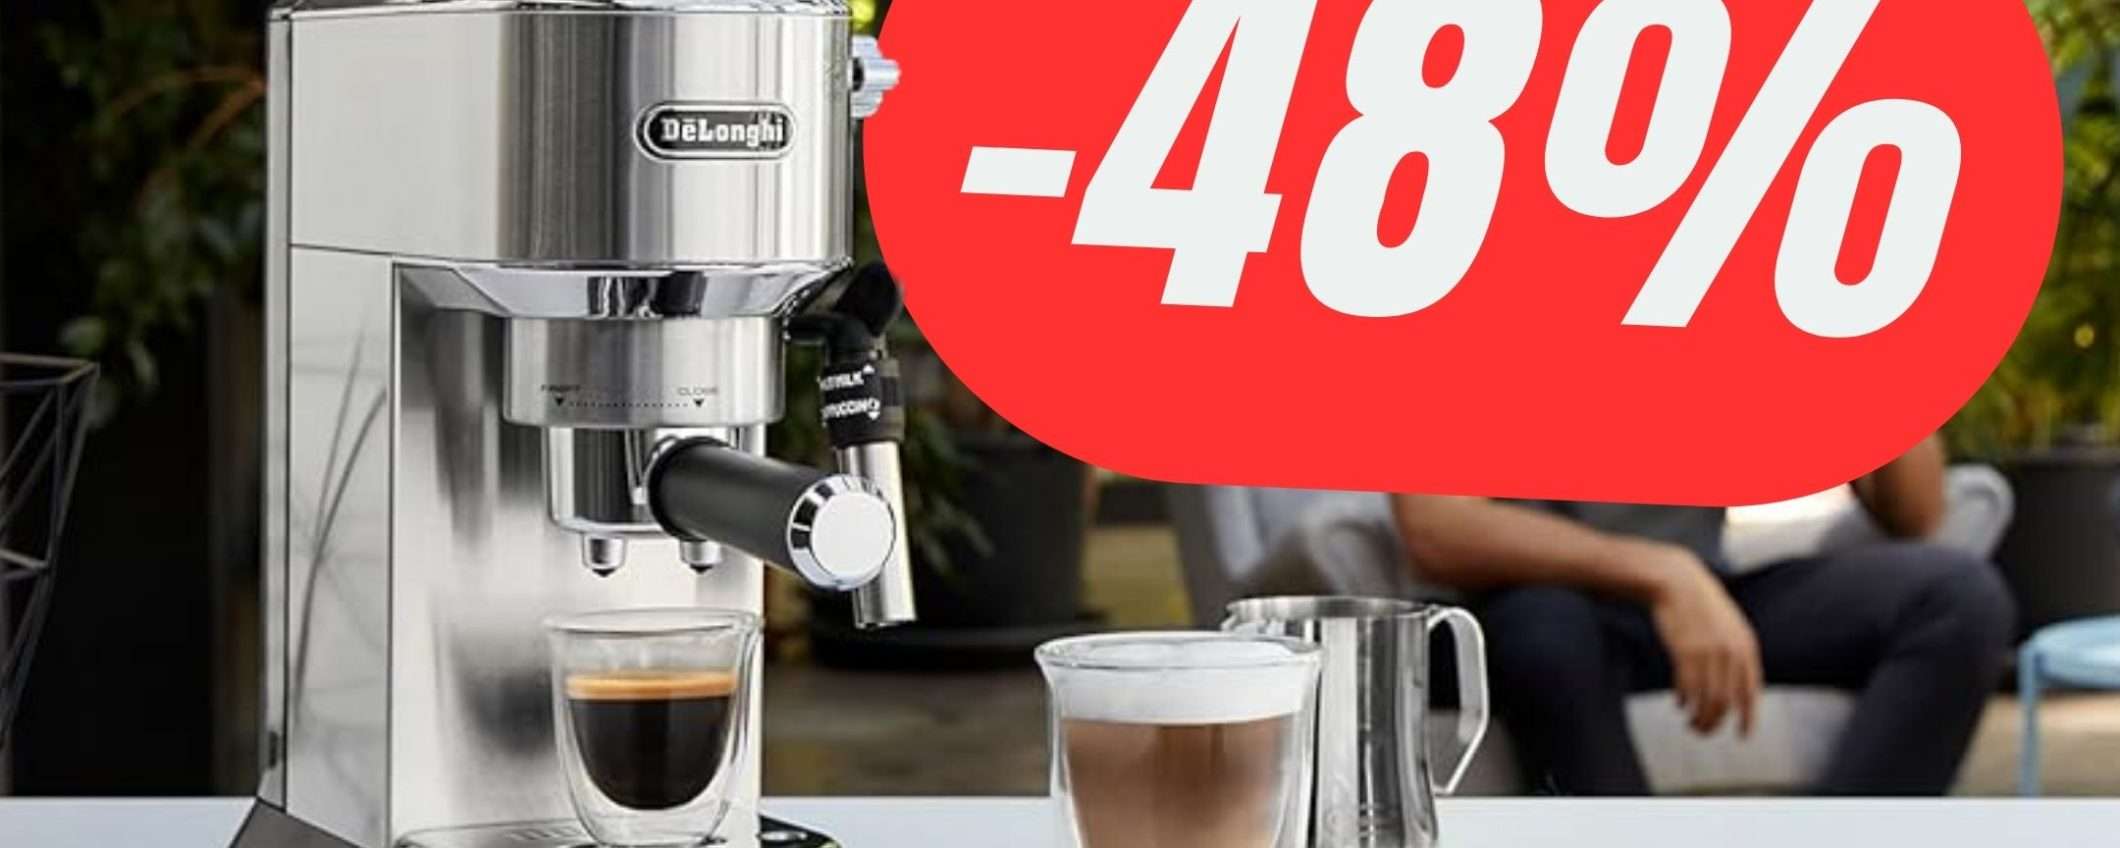 Caffè e Cappuccino ogni mattina con De'Longhi Dedica SCONTATA del -48%!